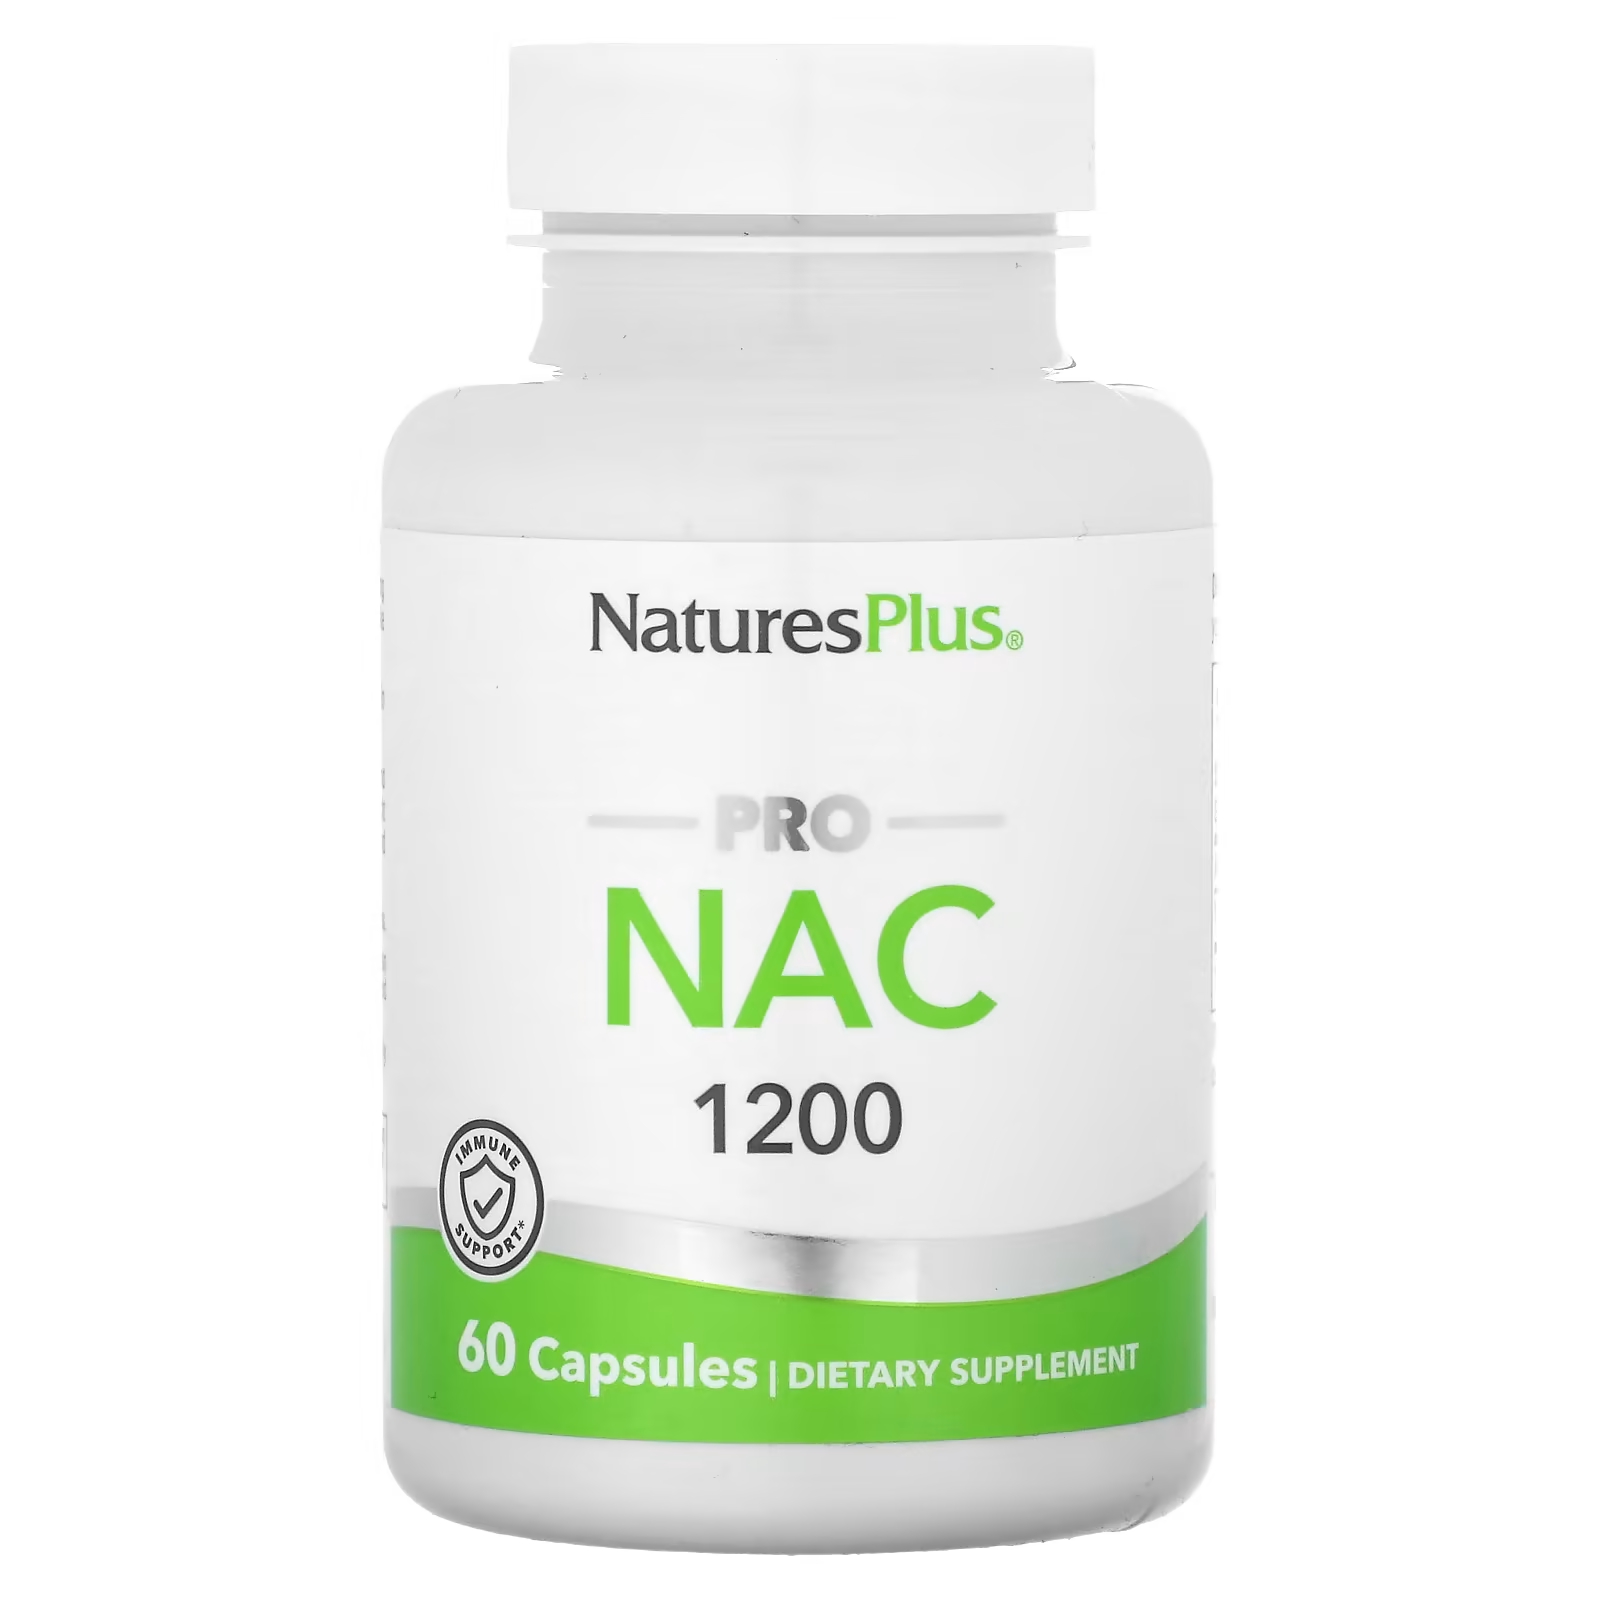 Пищевая добавка NaturesPlus Pro NAC 1200, 60 капсул пищевая добавка naturesplus sugar control 60 капсул